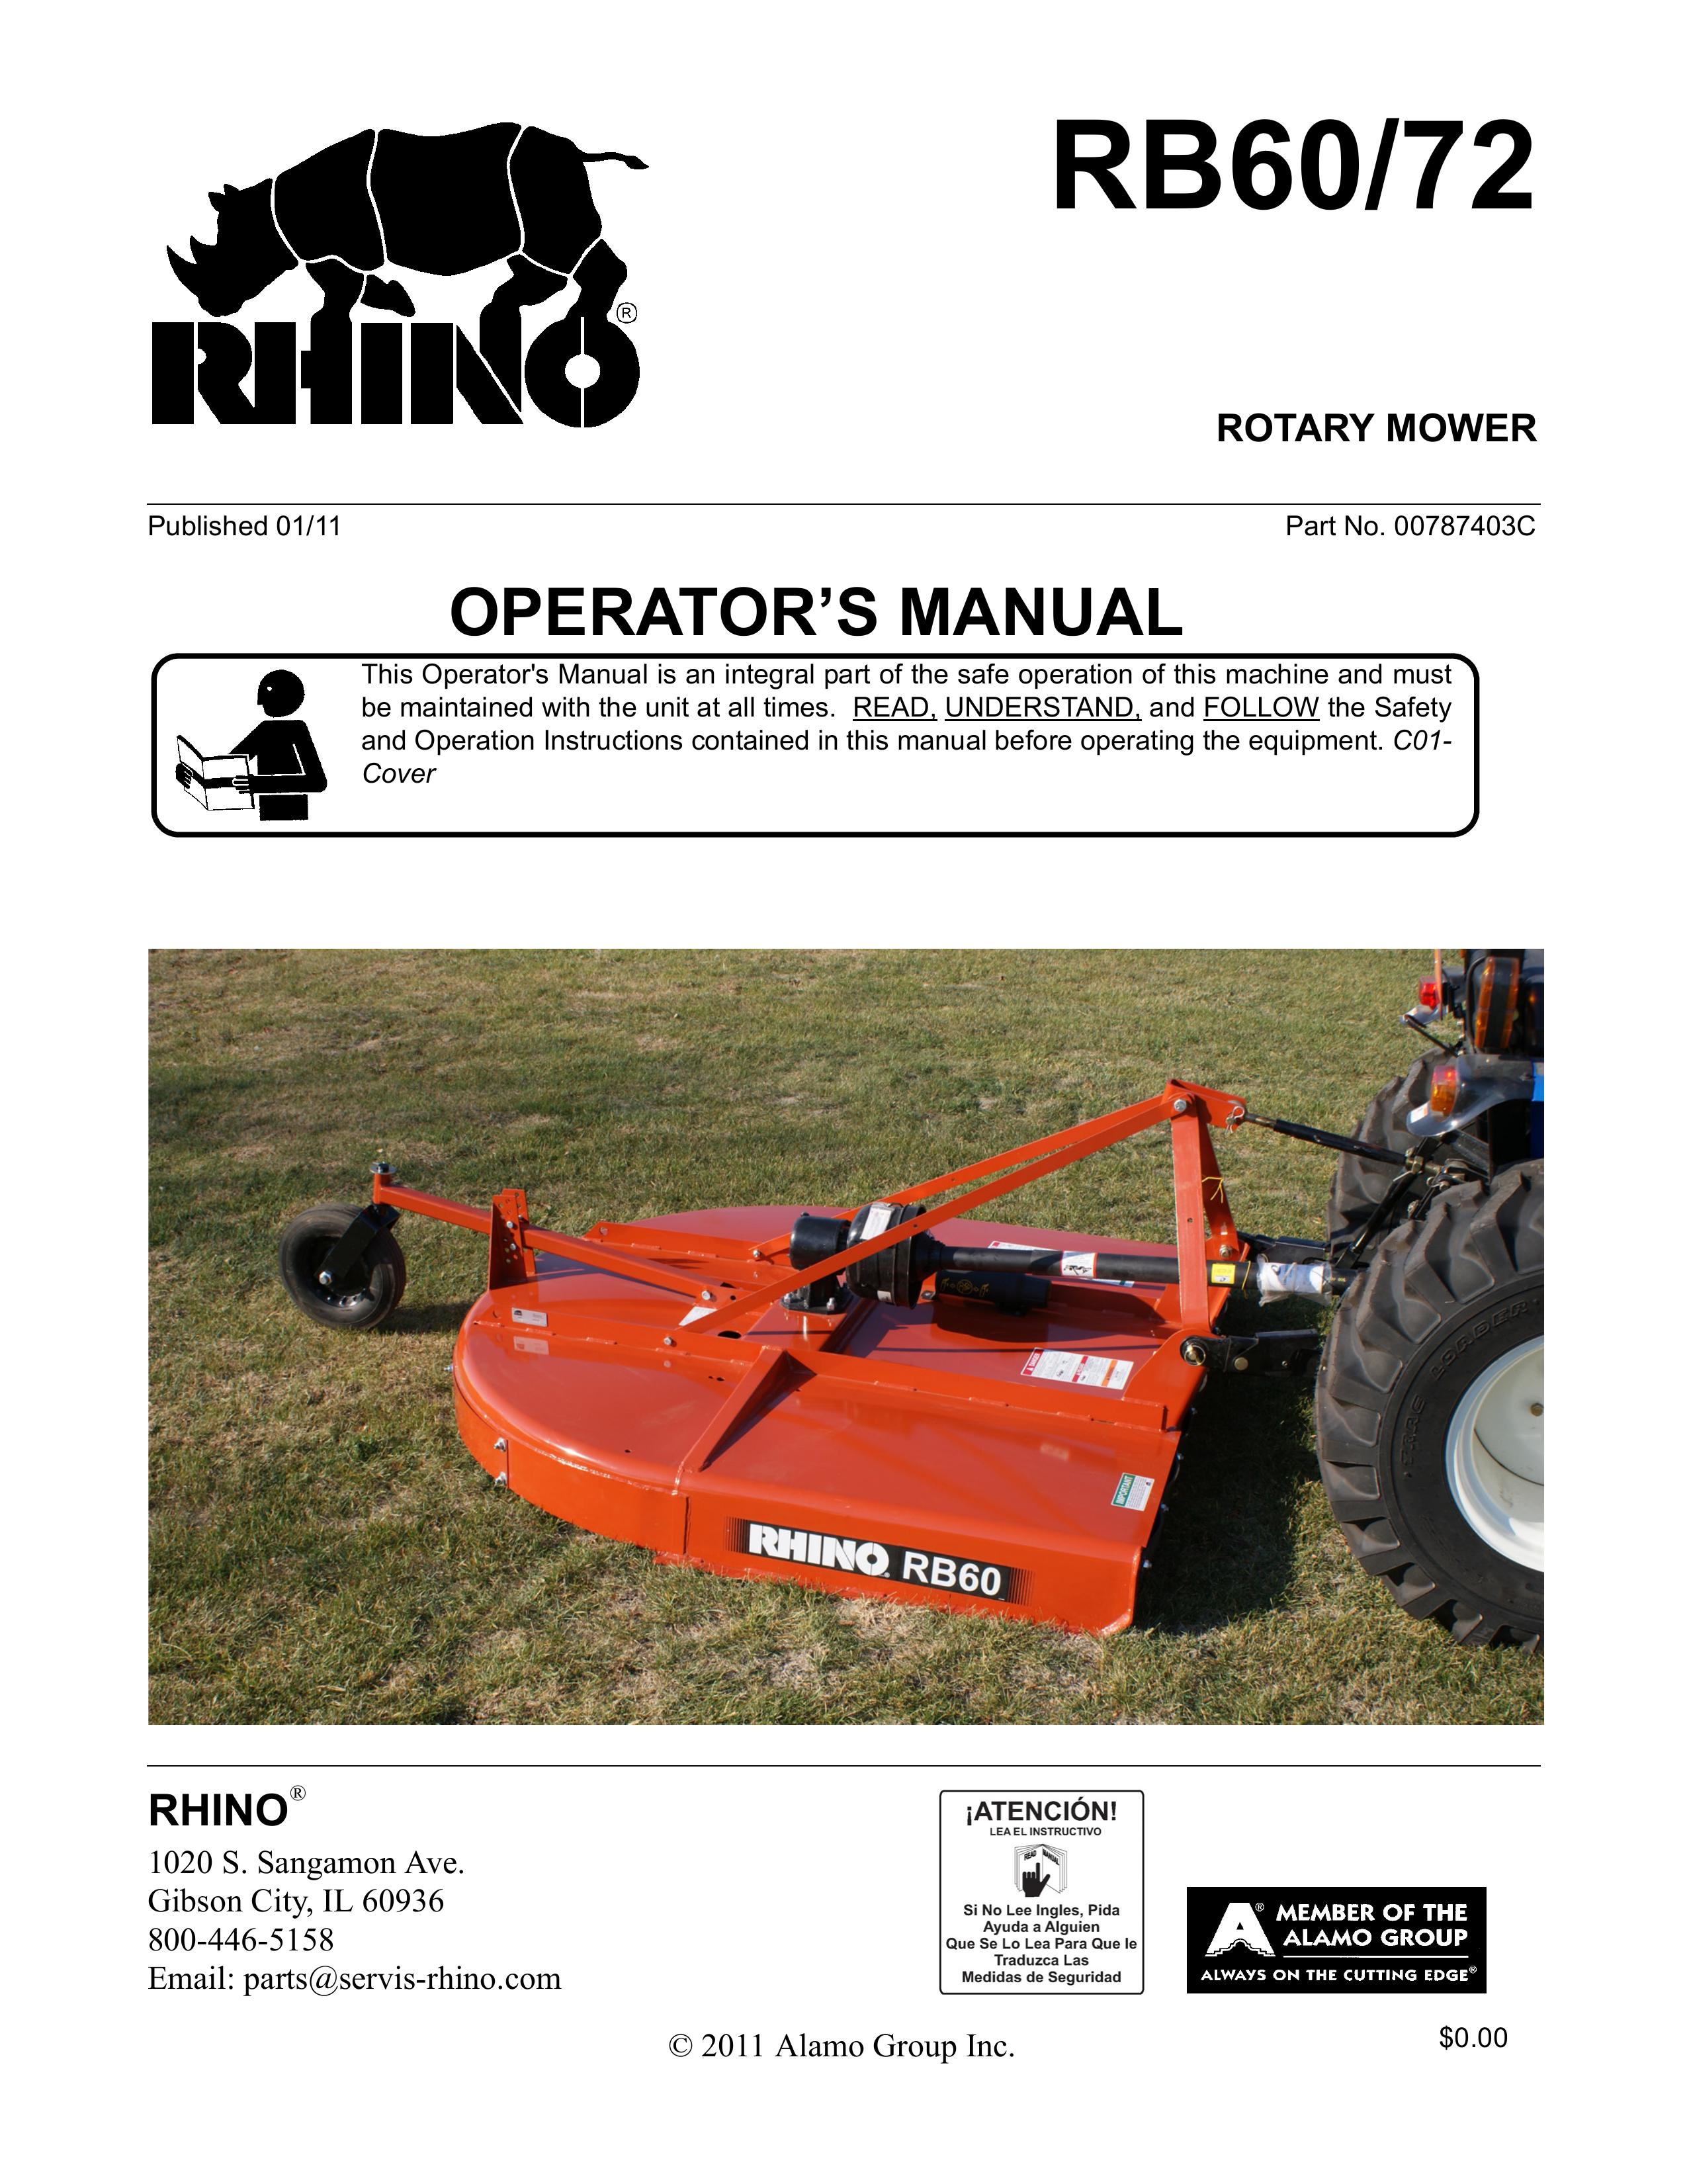 Blue Rhino RB60/72 Lawn Mower User Manual